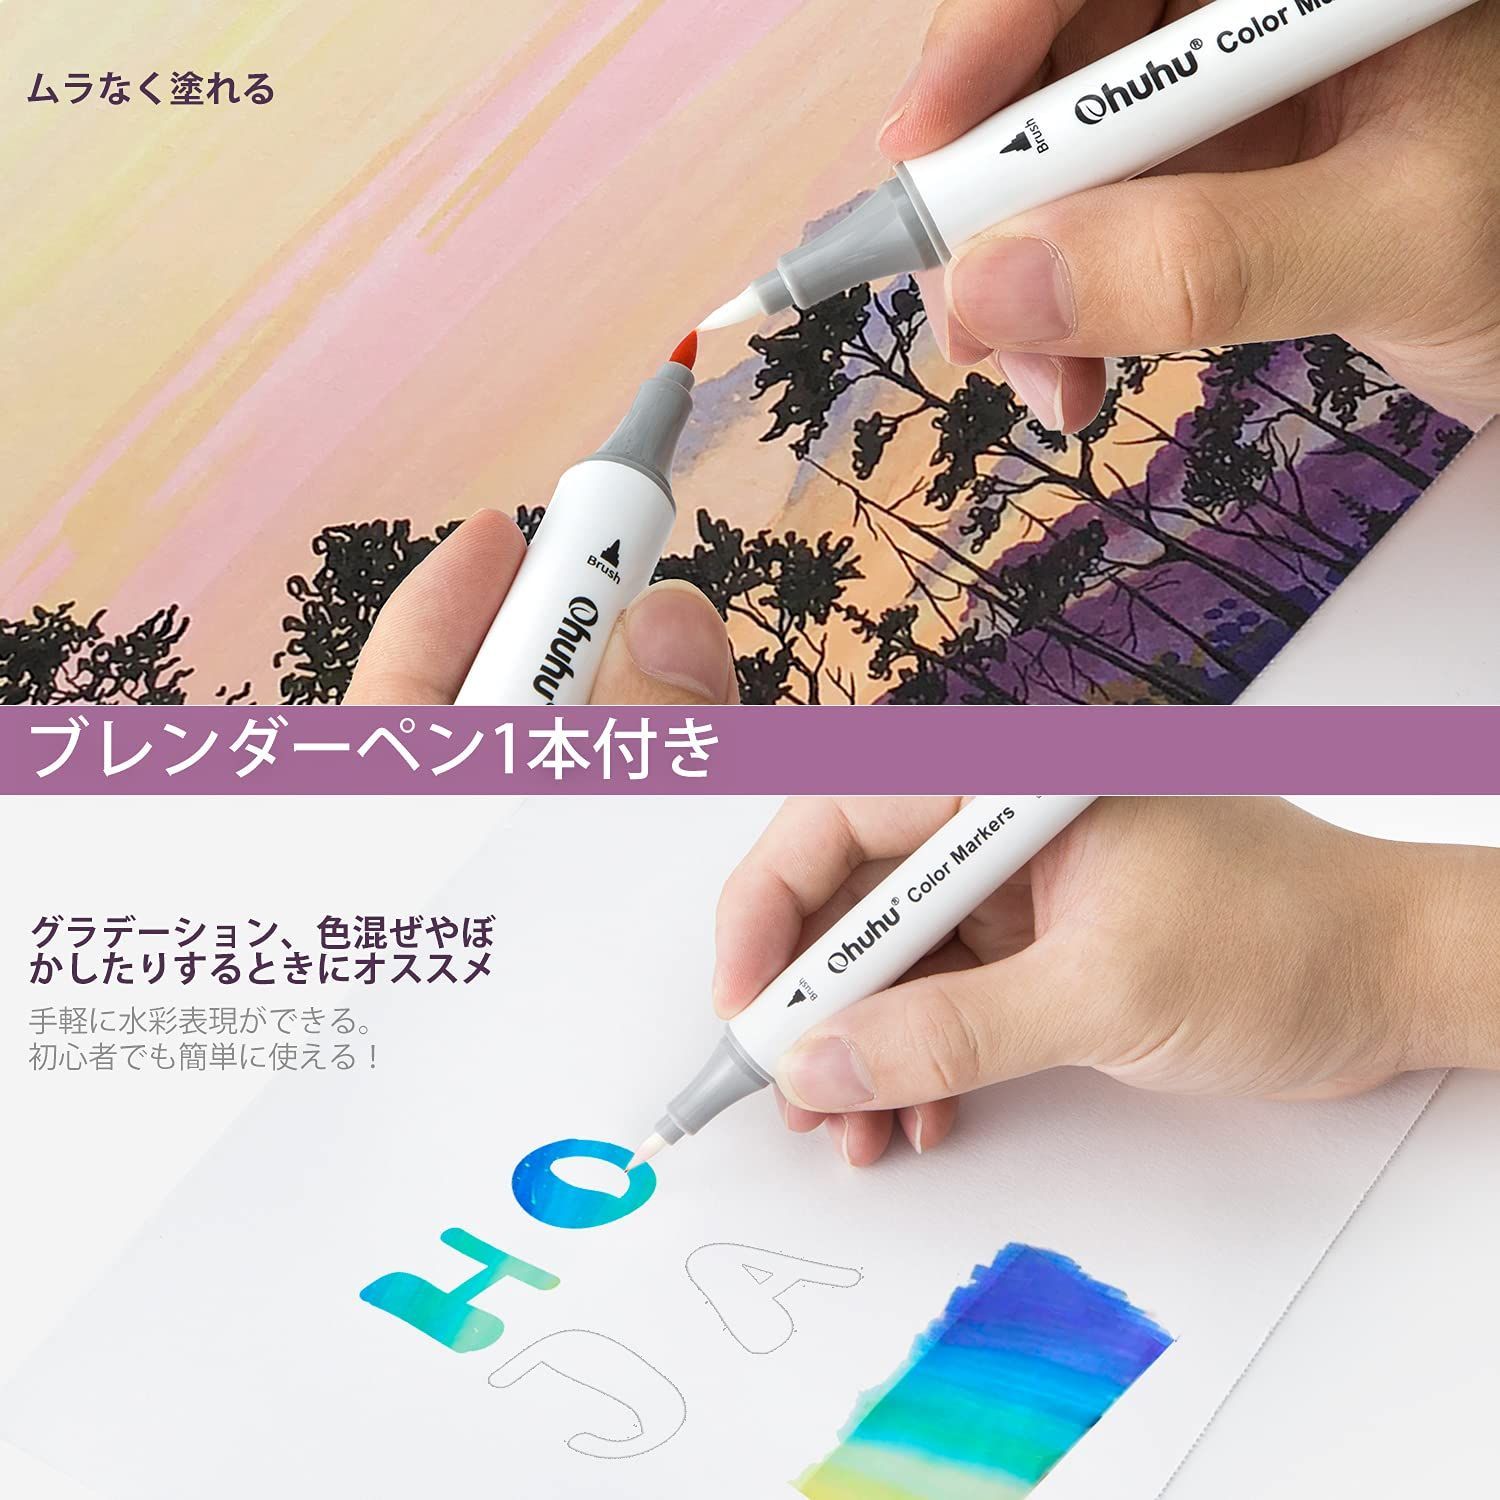 Ohuhu アートマーカーペン 60色 筆先 水彩ペン 水性 ふでタイプ ふで